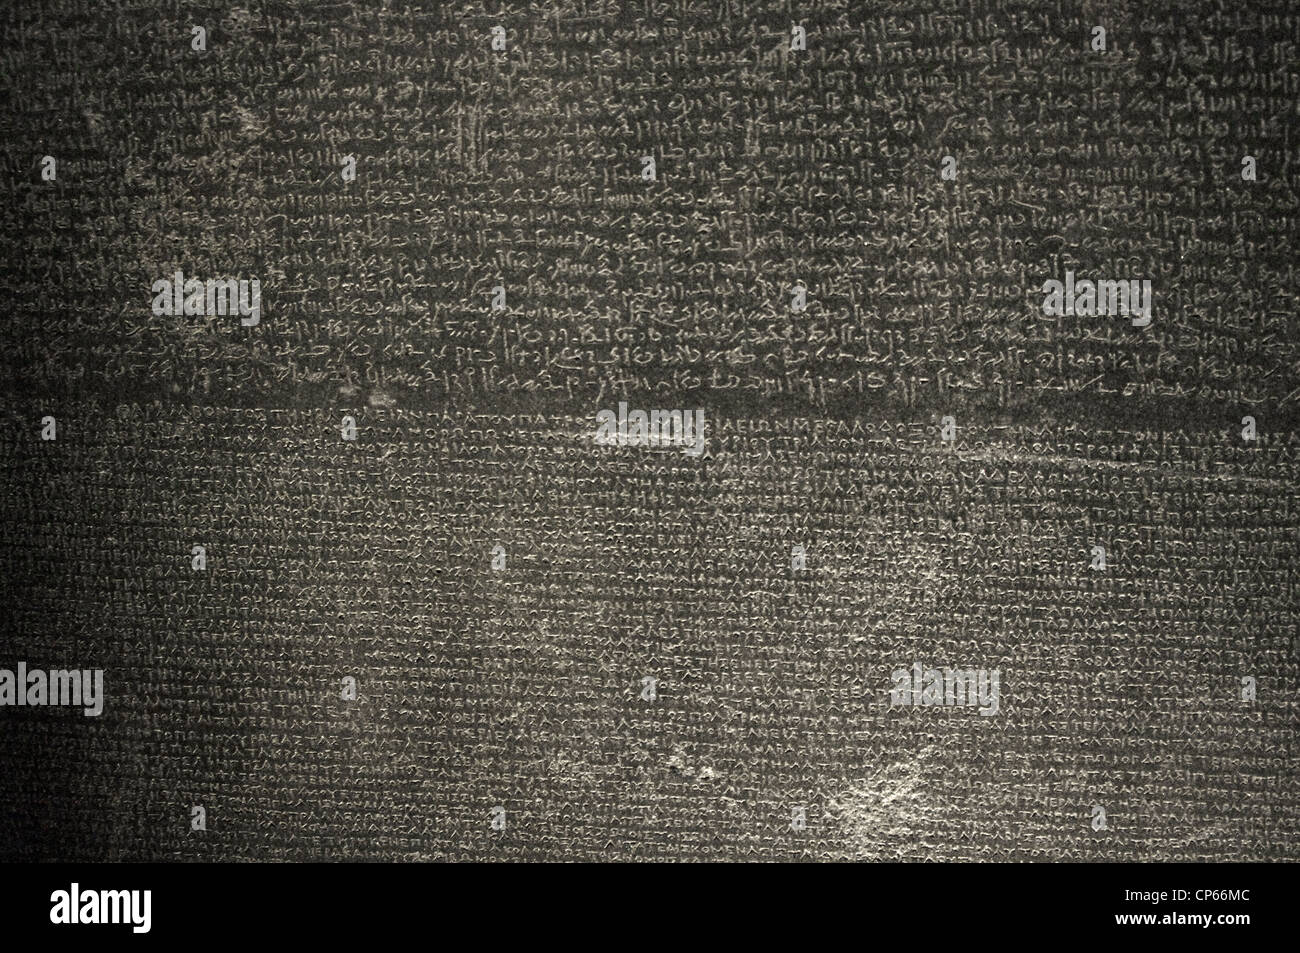 La Rosetta Stone. Epoca tolemaica. 196 BC. Demotic e scritture greche. Dettaglio. Foto Stock